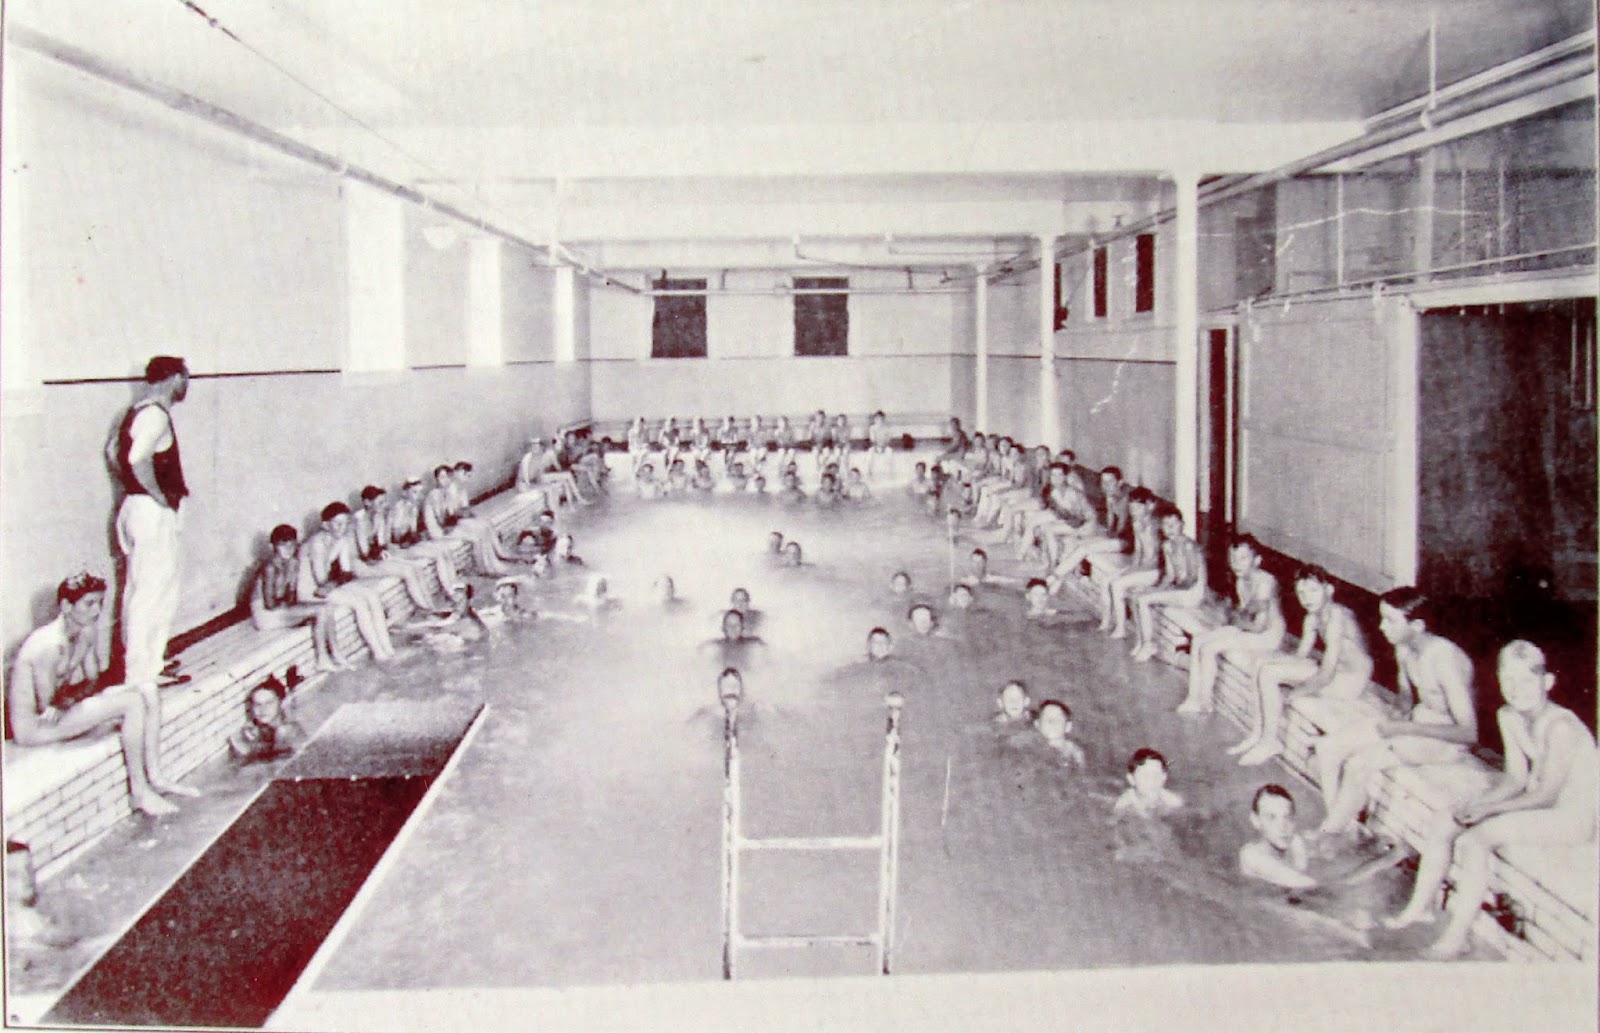 Swimming classes in the Walla Walla, WA YMCA.